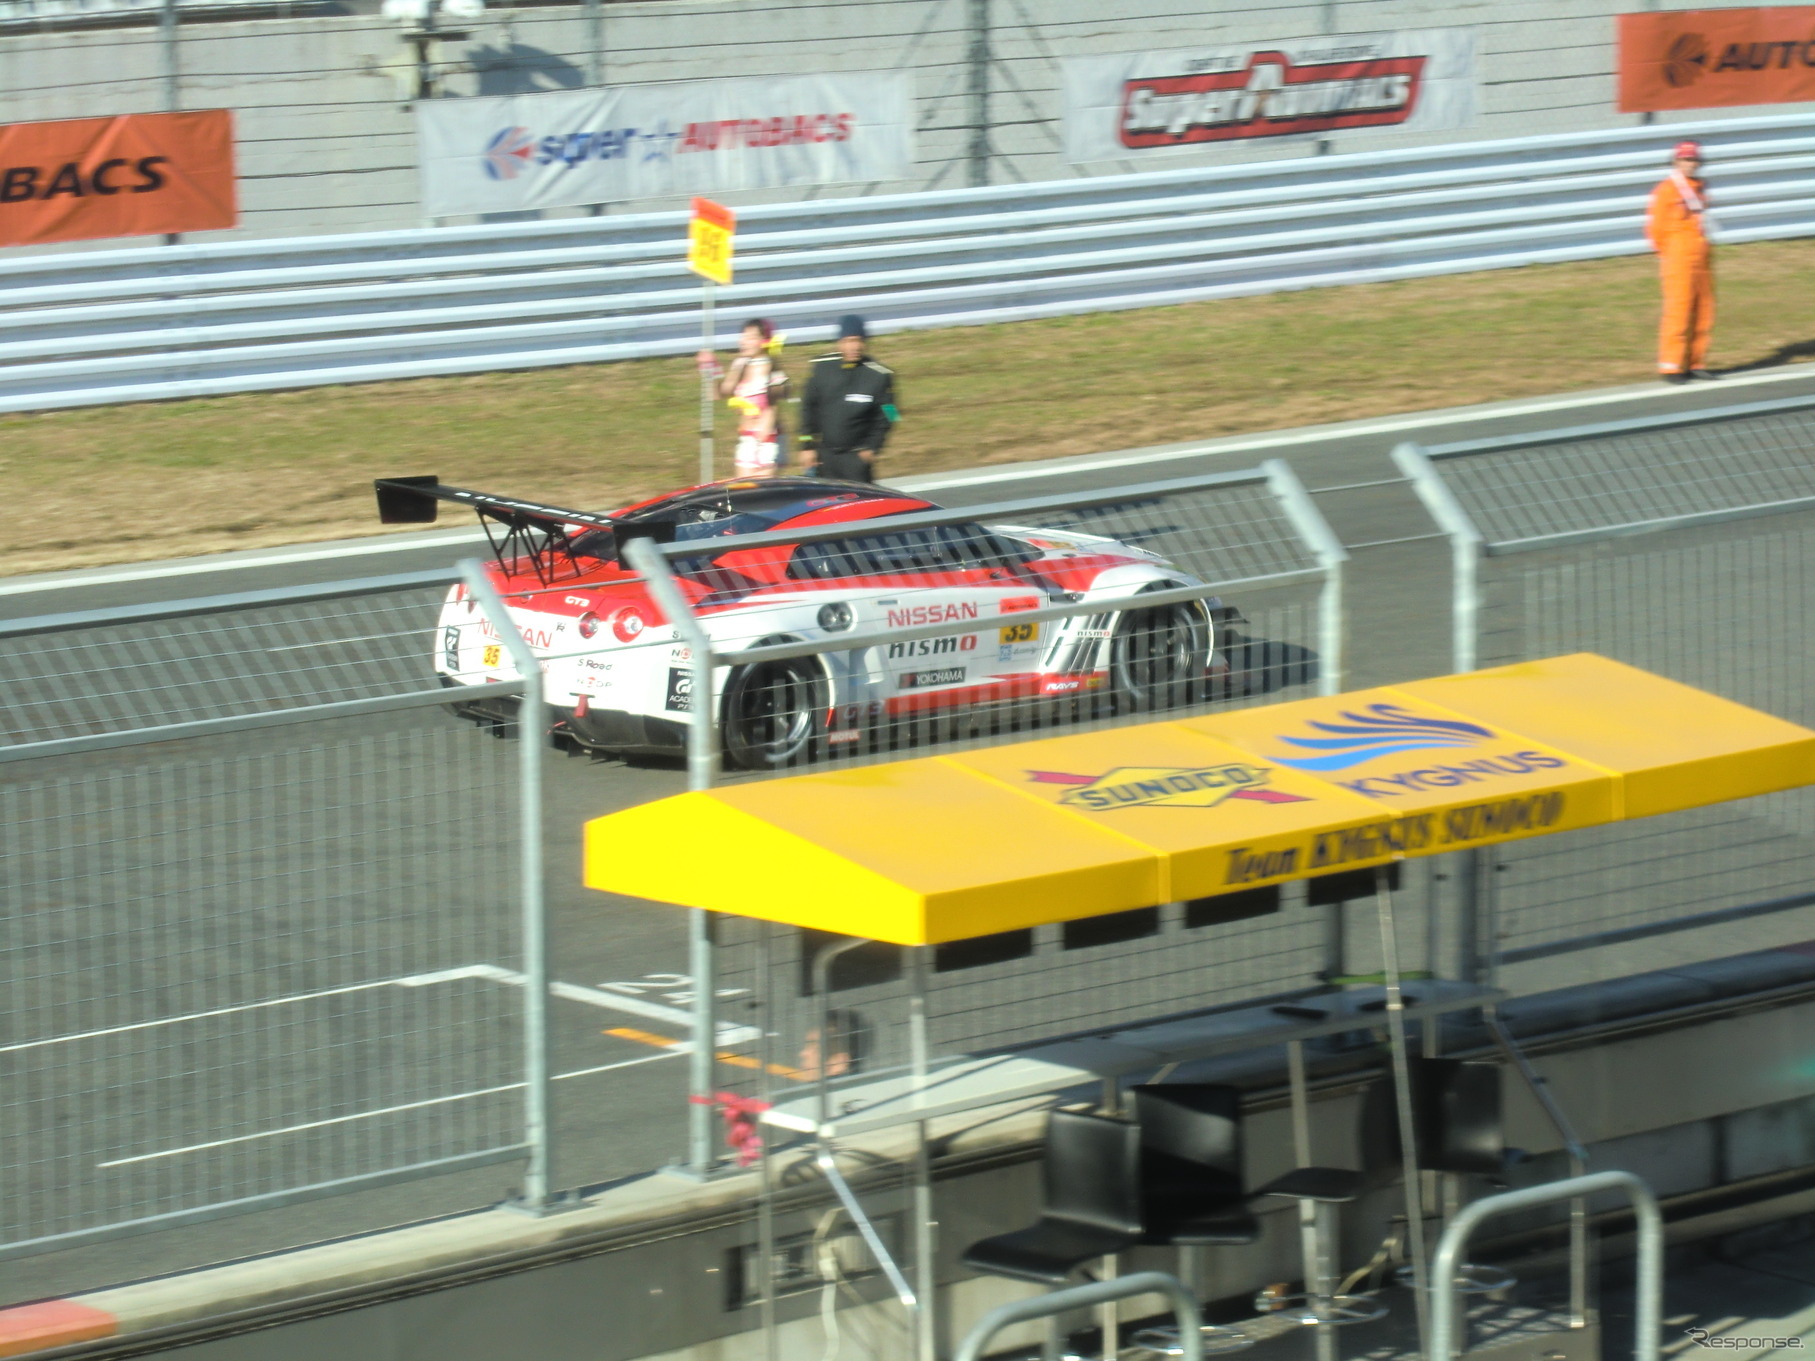 #35 GT-Rのバンカムは初出場ながらトップ走行の健闘を見せた。